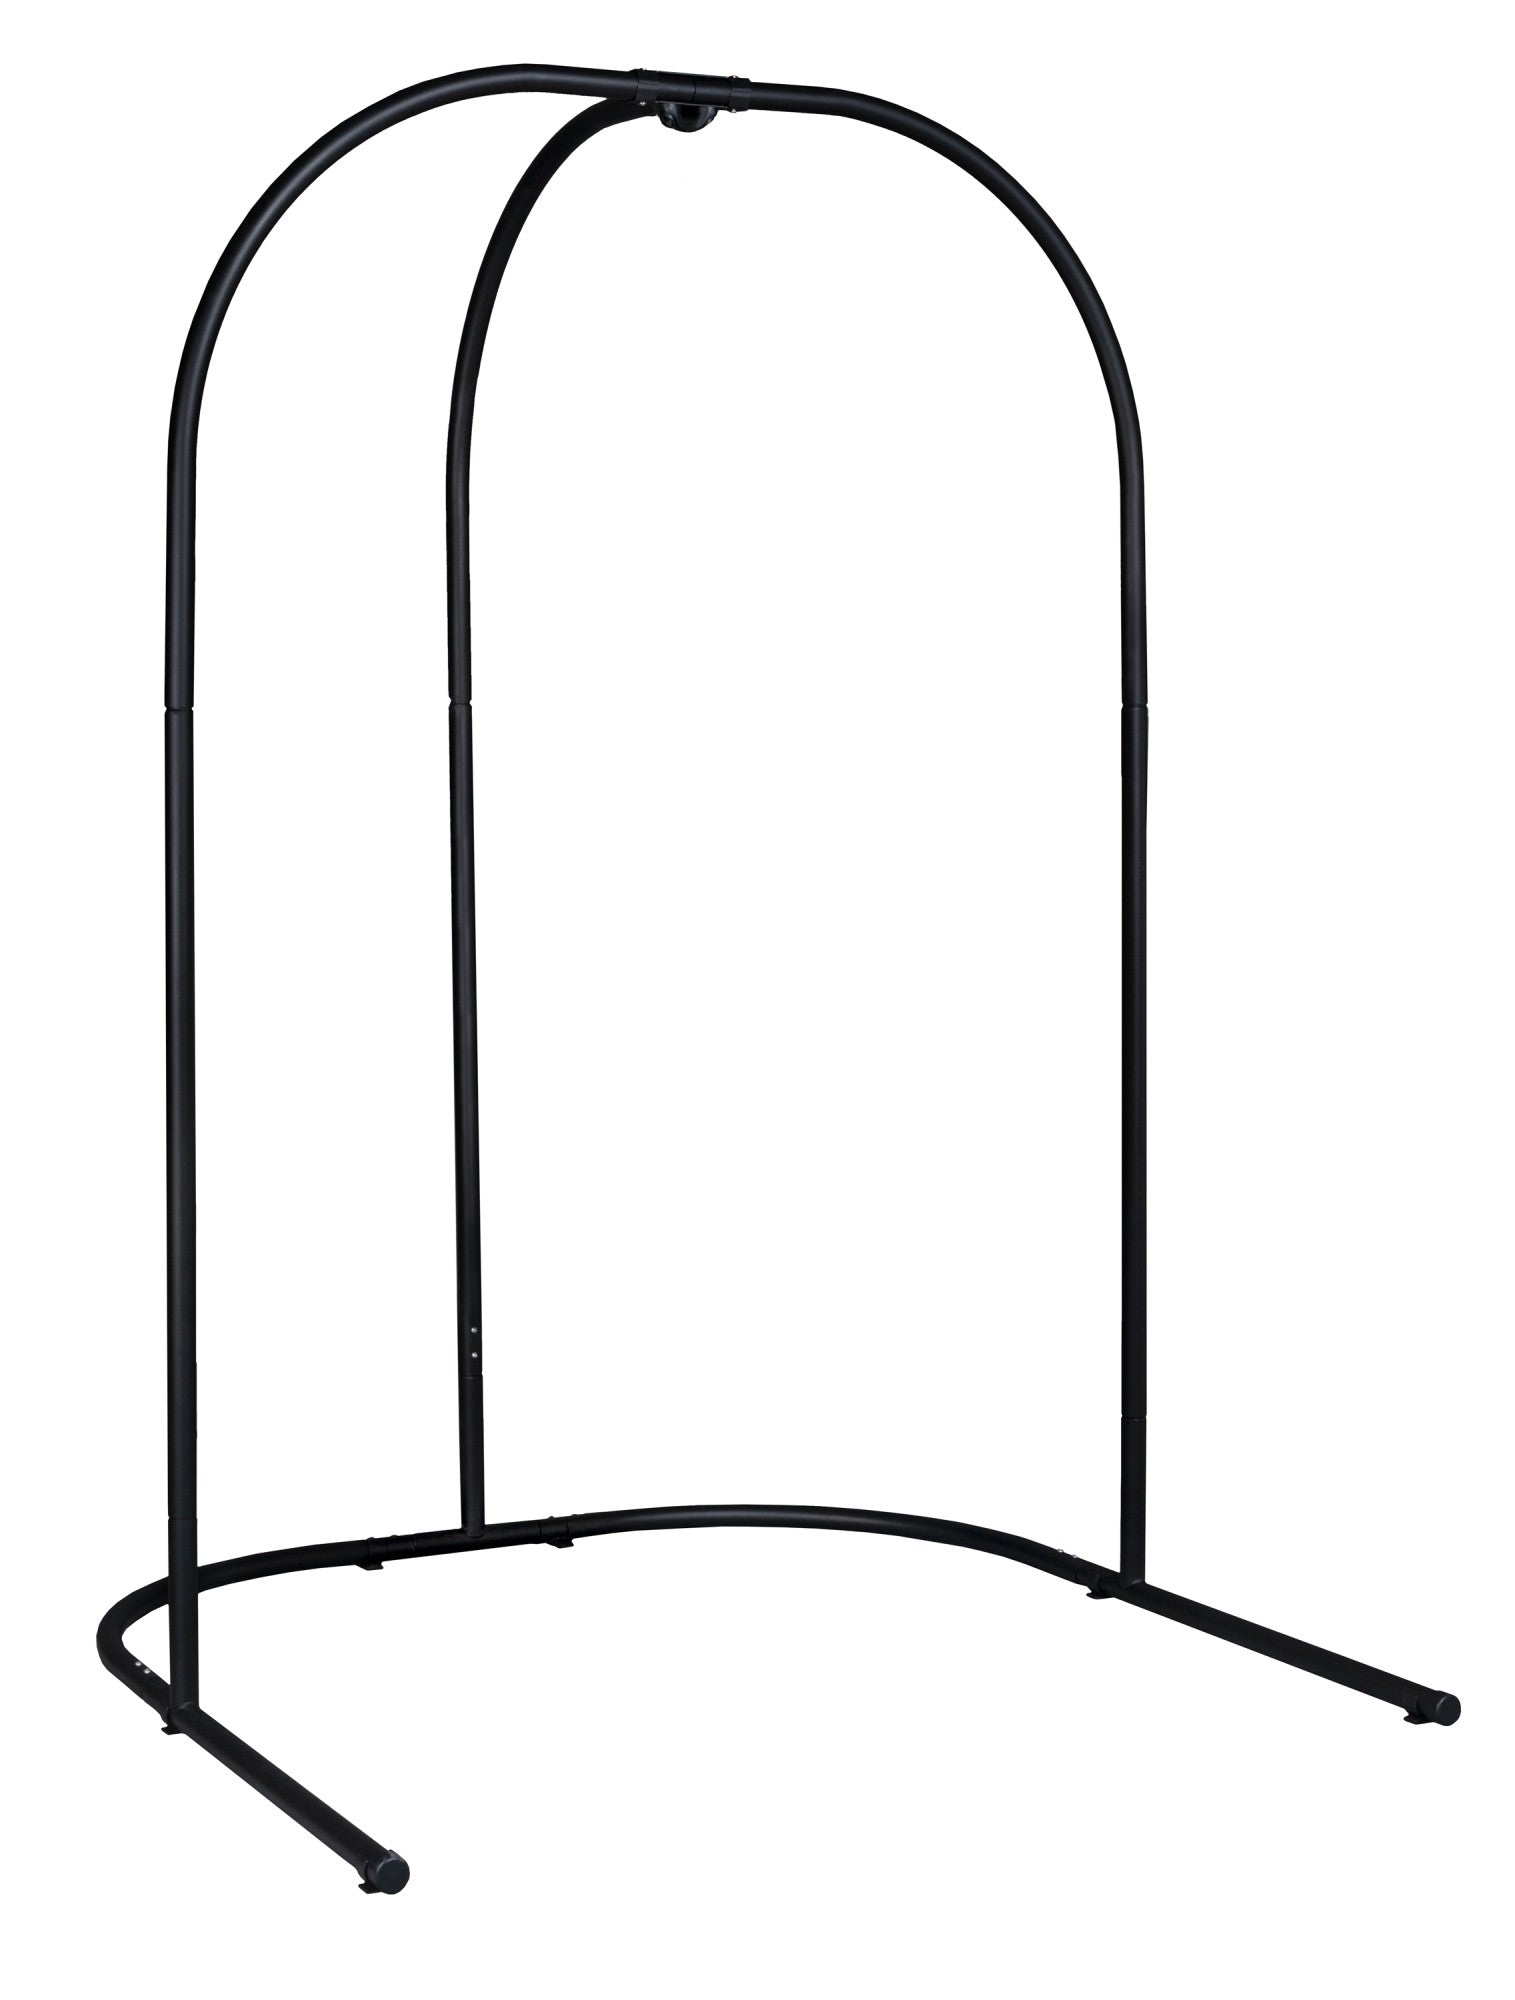 Arcada Anthracite - Supporto in acciaio galvanizzato per sedie pensili e tane pensile per bambini